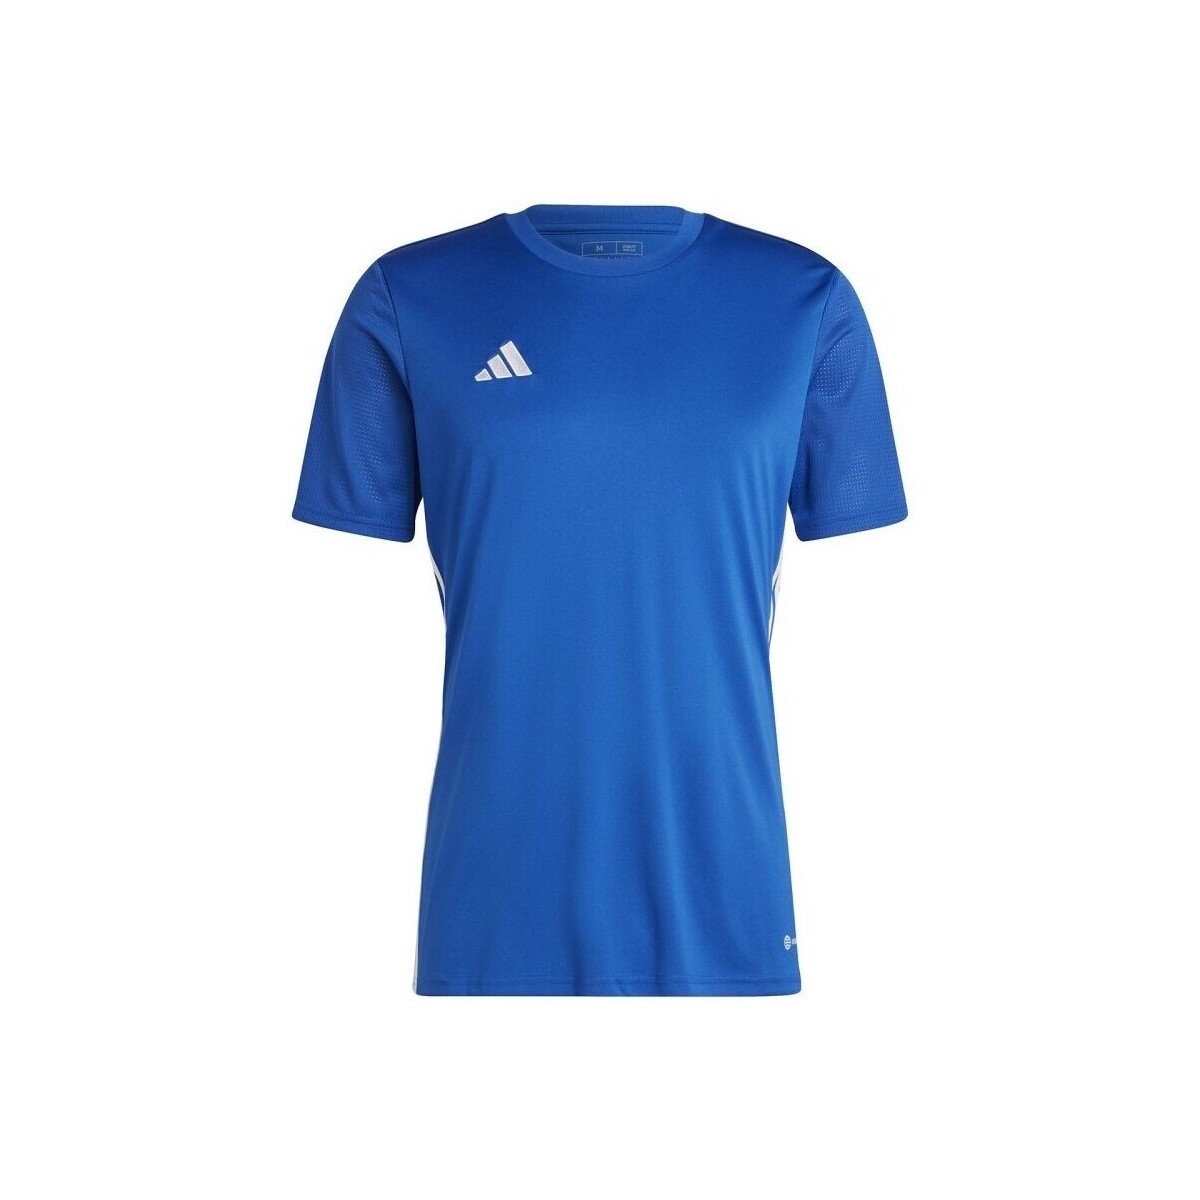 Vêtements Homme T-shirts manches courtes adidas Originals Tiro 23 Competition Bleu